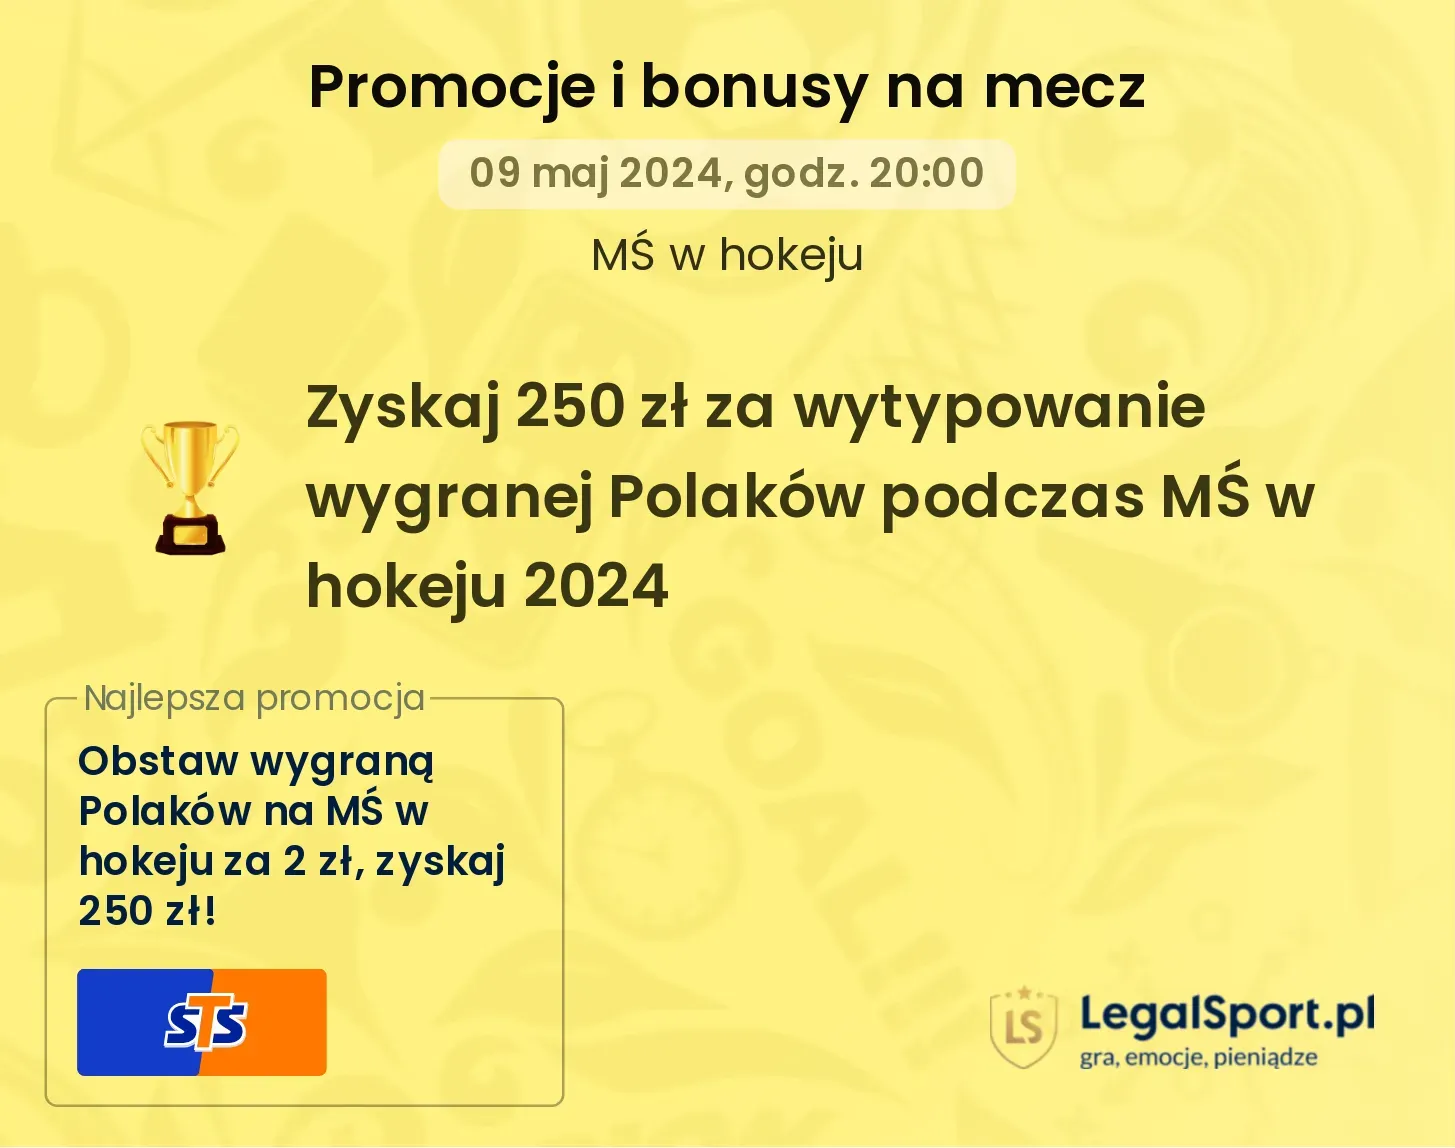 Zyskaj 250 zł za wytypowanie wygranej Polaków podczas MŚ w hokeju 2024 promocje bonusy na mecz